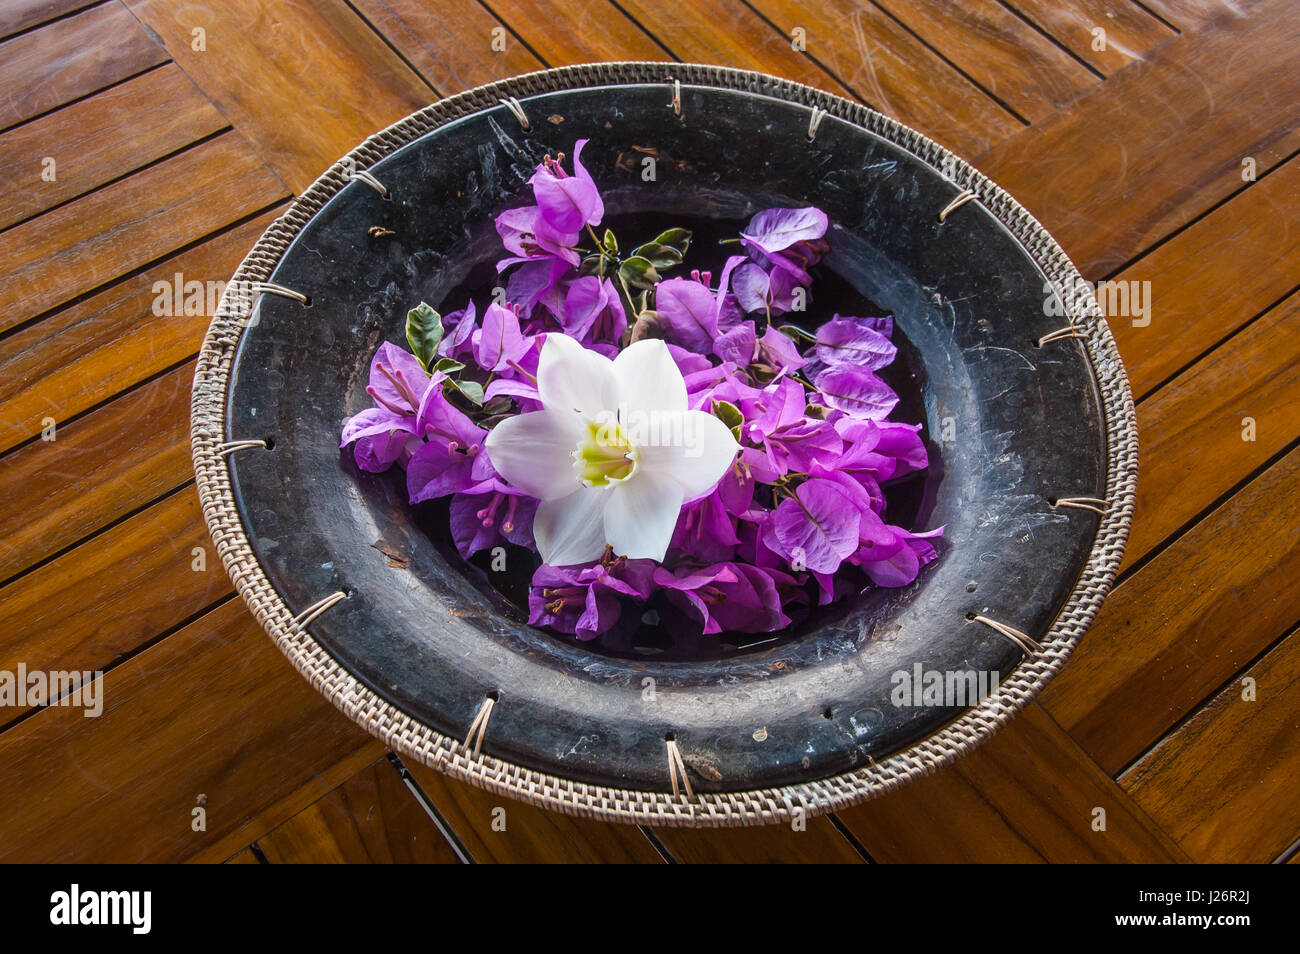 Artigianale di pentola di coccio con tessuto edge contiene una raccolta di calmante di fiori viola e un bellissimo fiore bianco, tutti su una base di doghe in teak Foto Stock